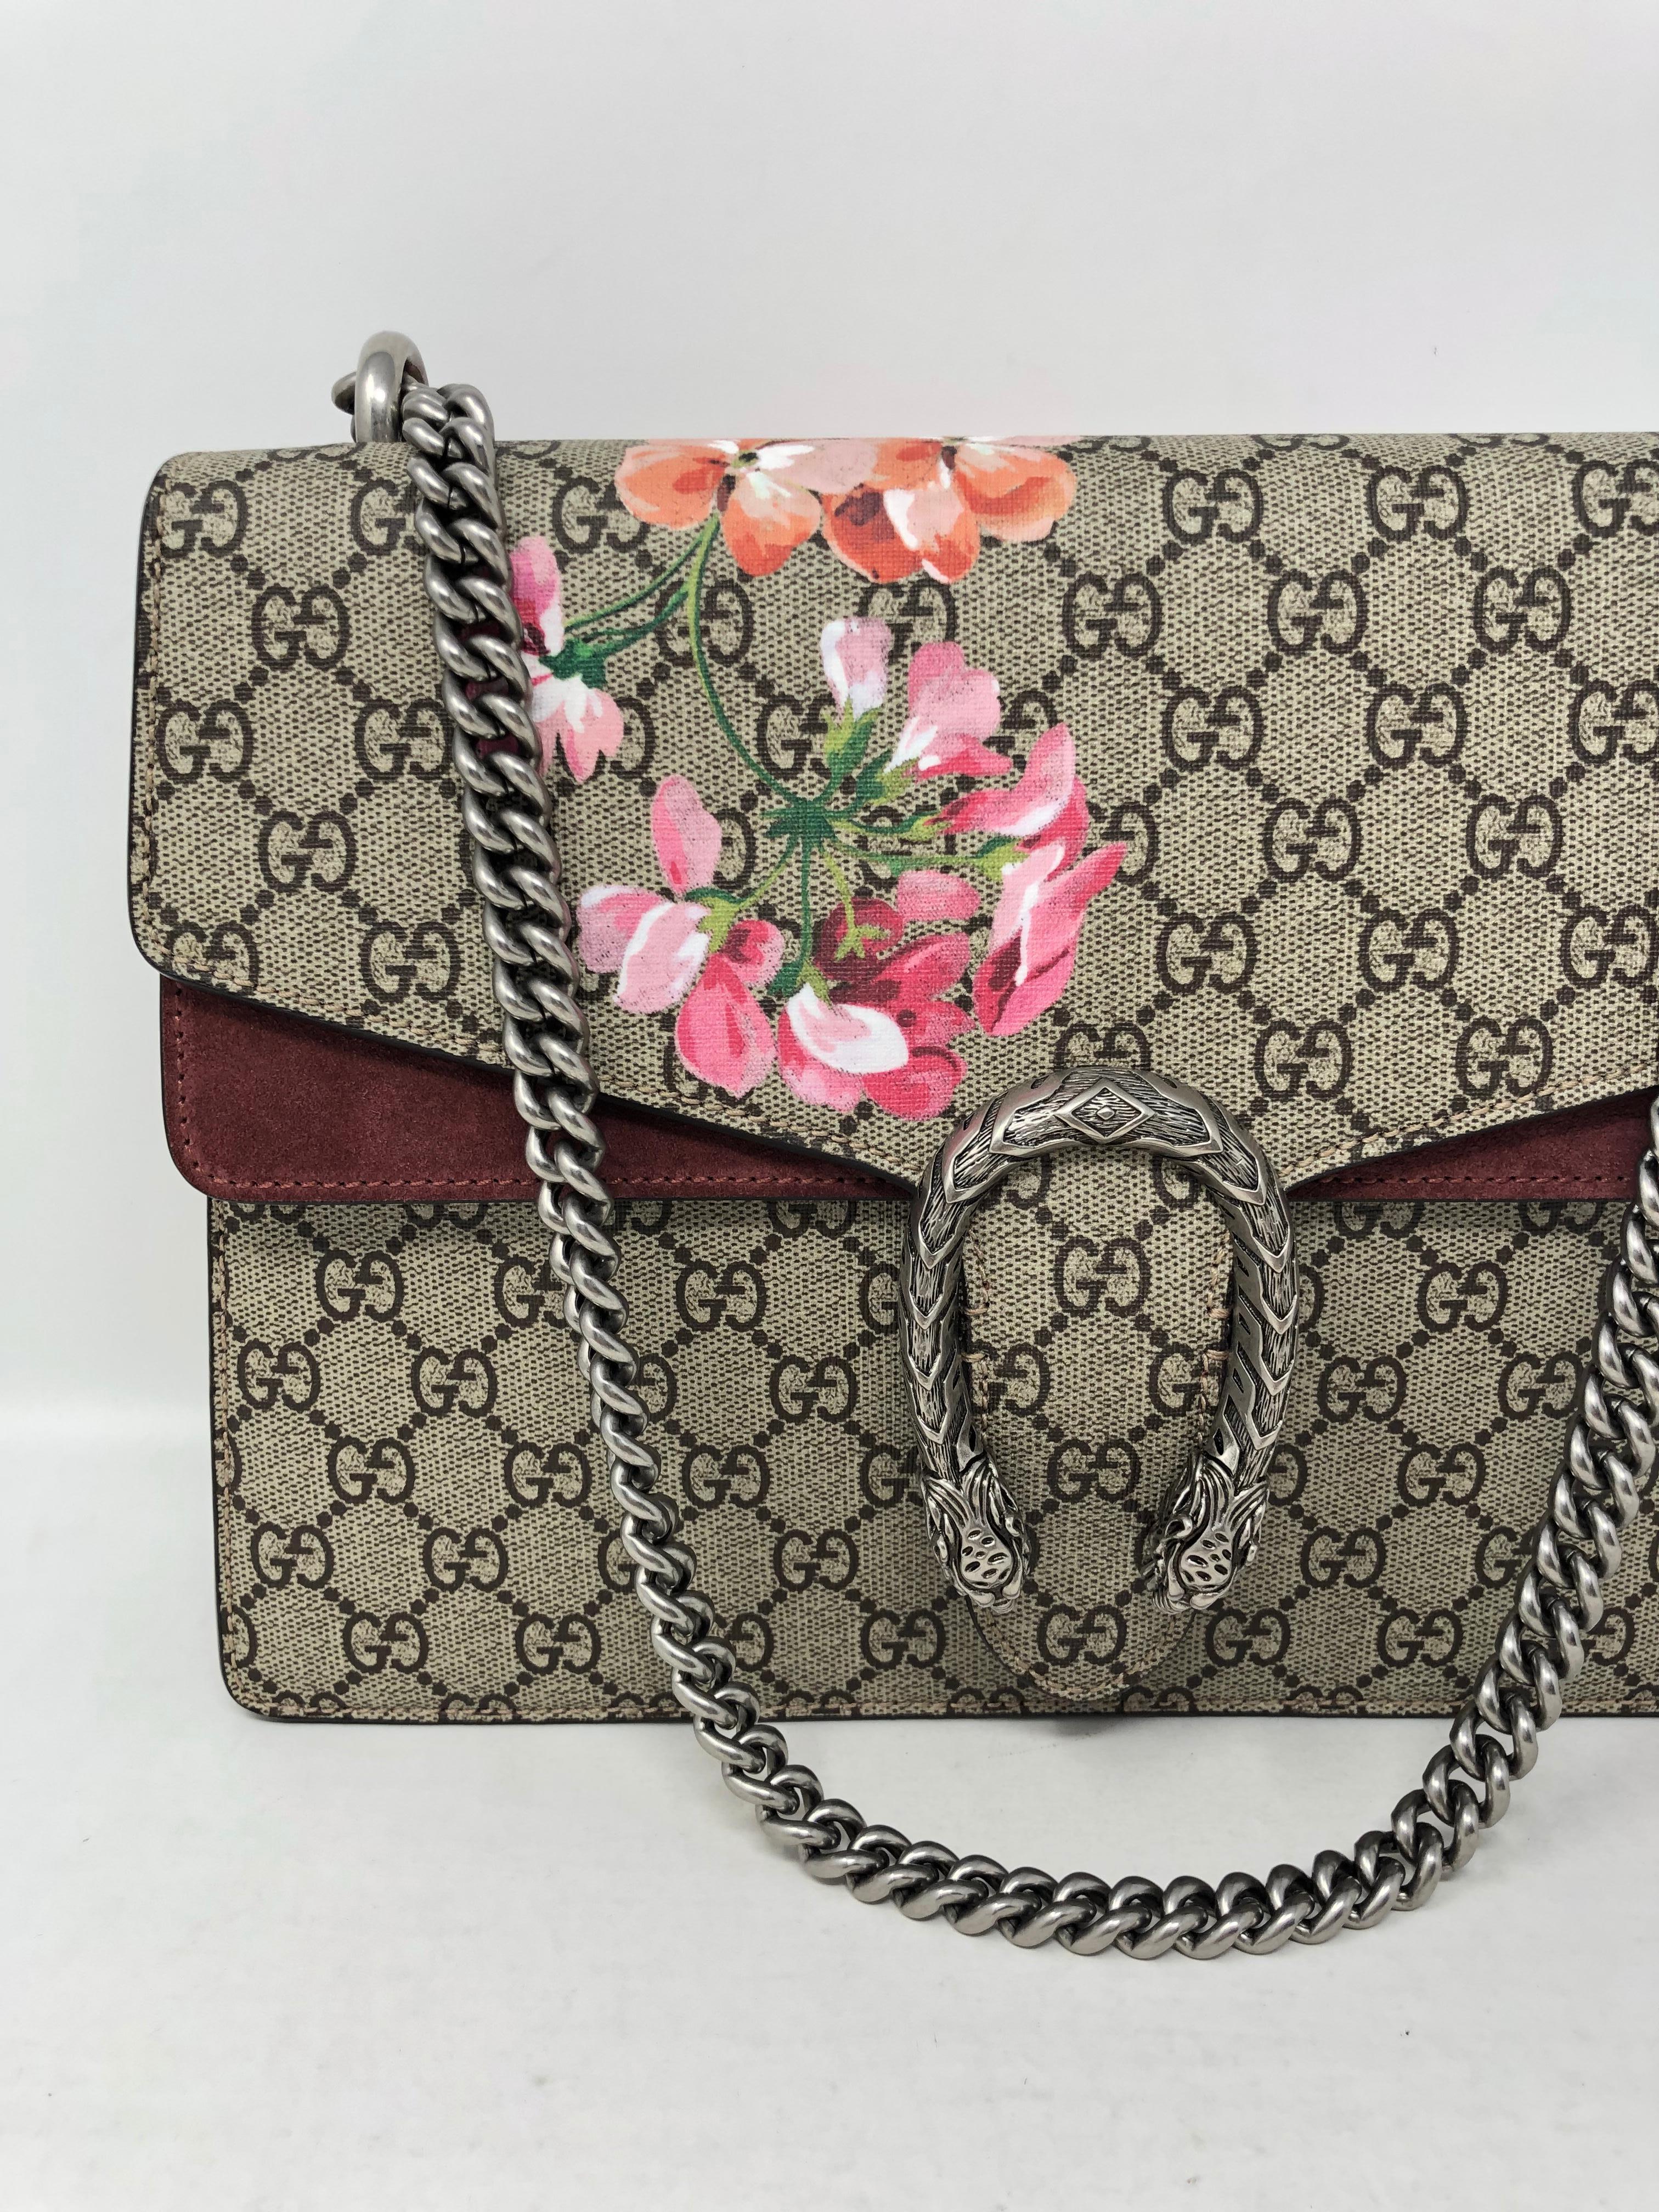 Gucci Dionysus Bag floral mit silberner Hardware. Nie benutzt. Neuer Zustand. Garantiert echt. 